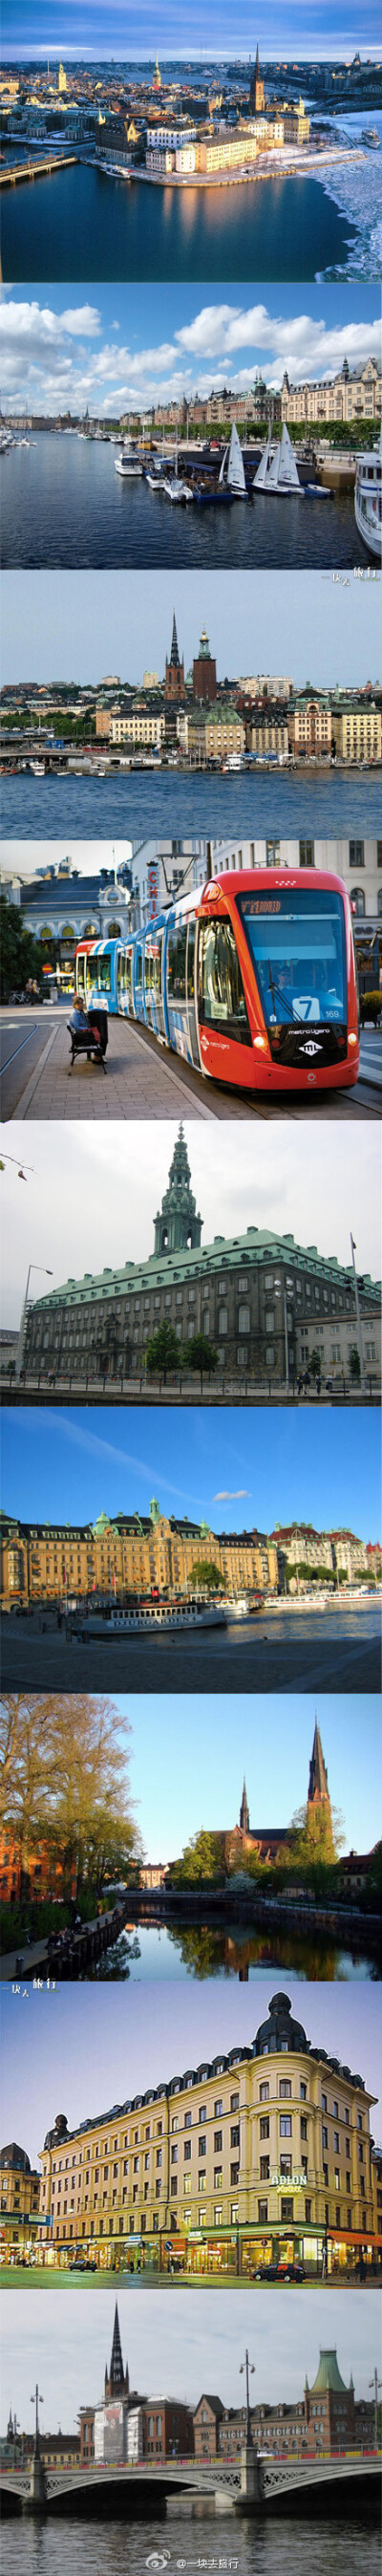 【斯德哥尔摩】一座既古老又年轻、既典雅又繁华的城市，处处充满古色古香，心动了吗？